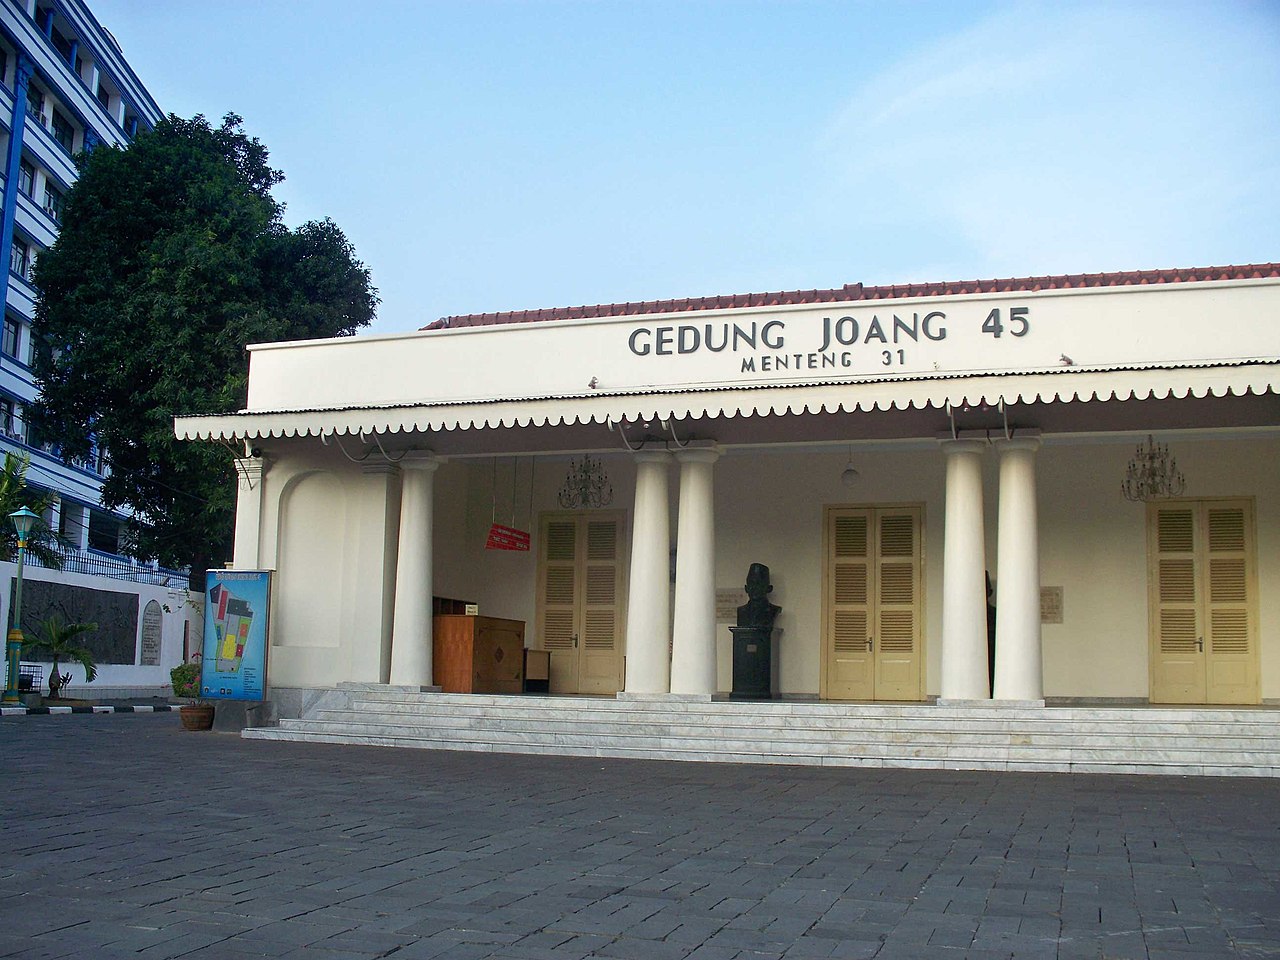 Tempat berkumpulnya para pejuang muda angkatan 45 di Menteng 31. Gedung ini kini menjadi Gedung Joang 45 yang digunakan sebagai museum atau tempat diselenggarakannya seminar kebudayaan.